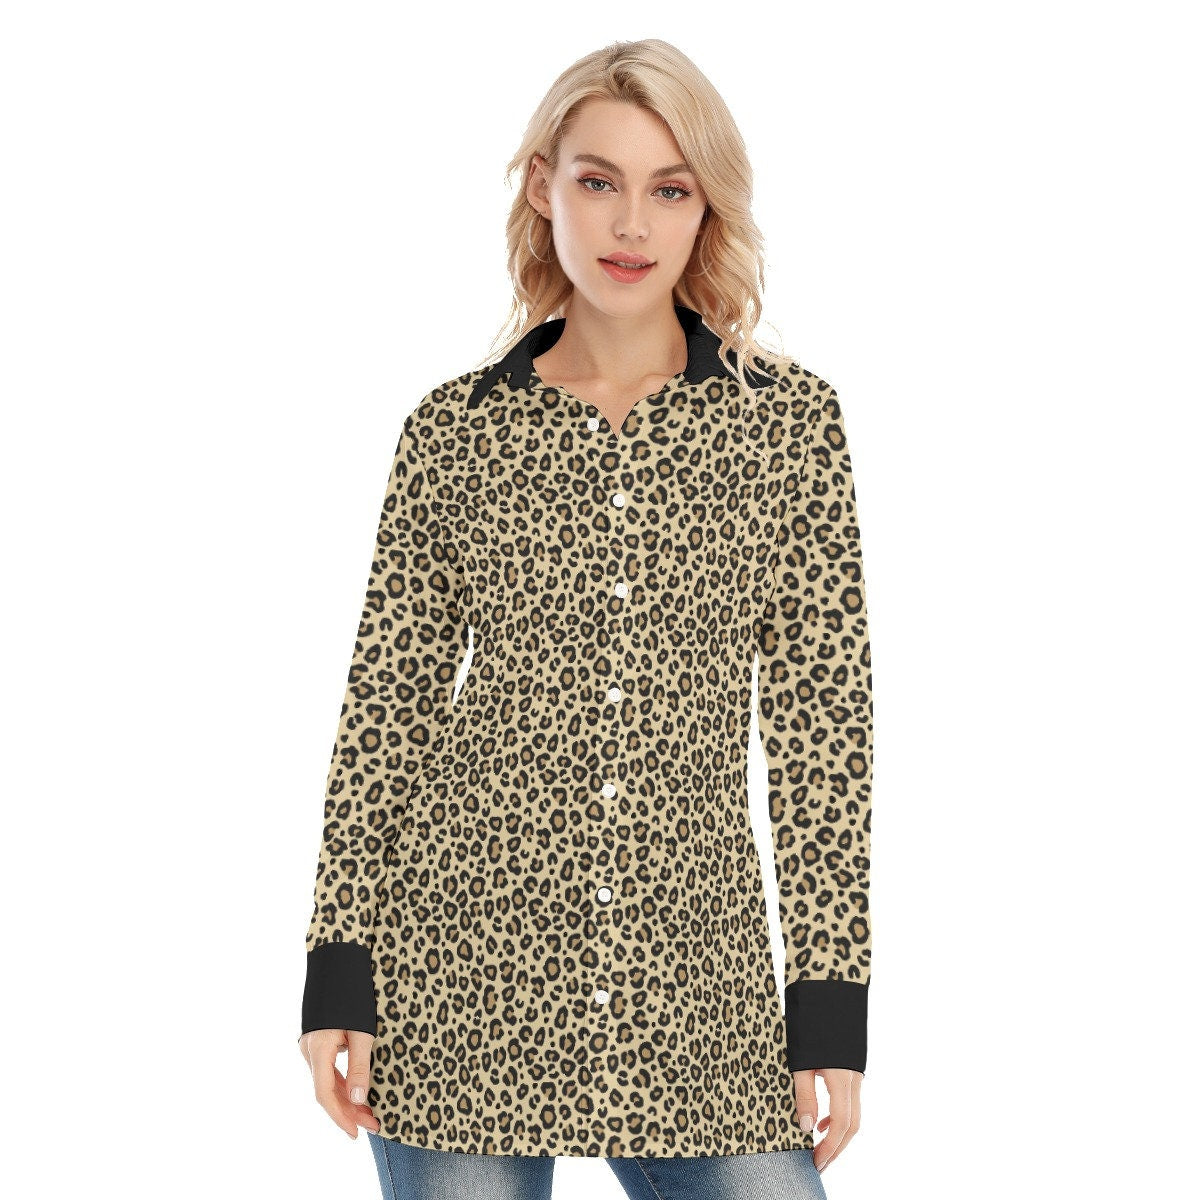 Leoparden-Shirt, handgemachtes Leoparden-Print-Shirt, Sexy Shirt, Animal-Print-Shirt, Damenbluse, Damen-Top, Langarmshirt Damen, High Fashion